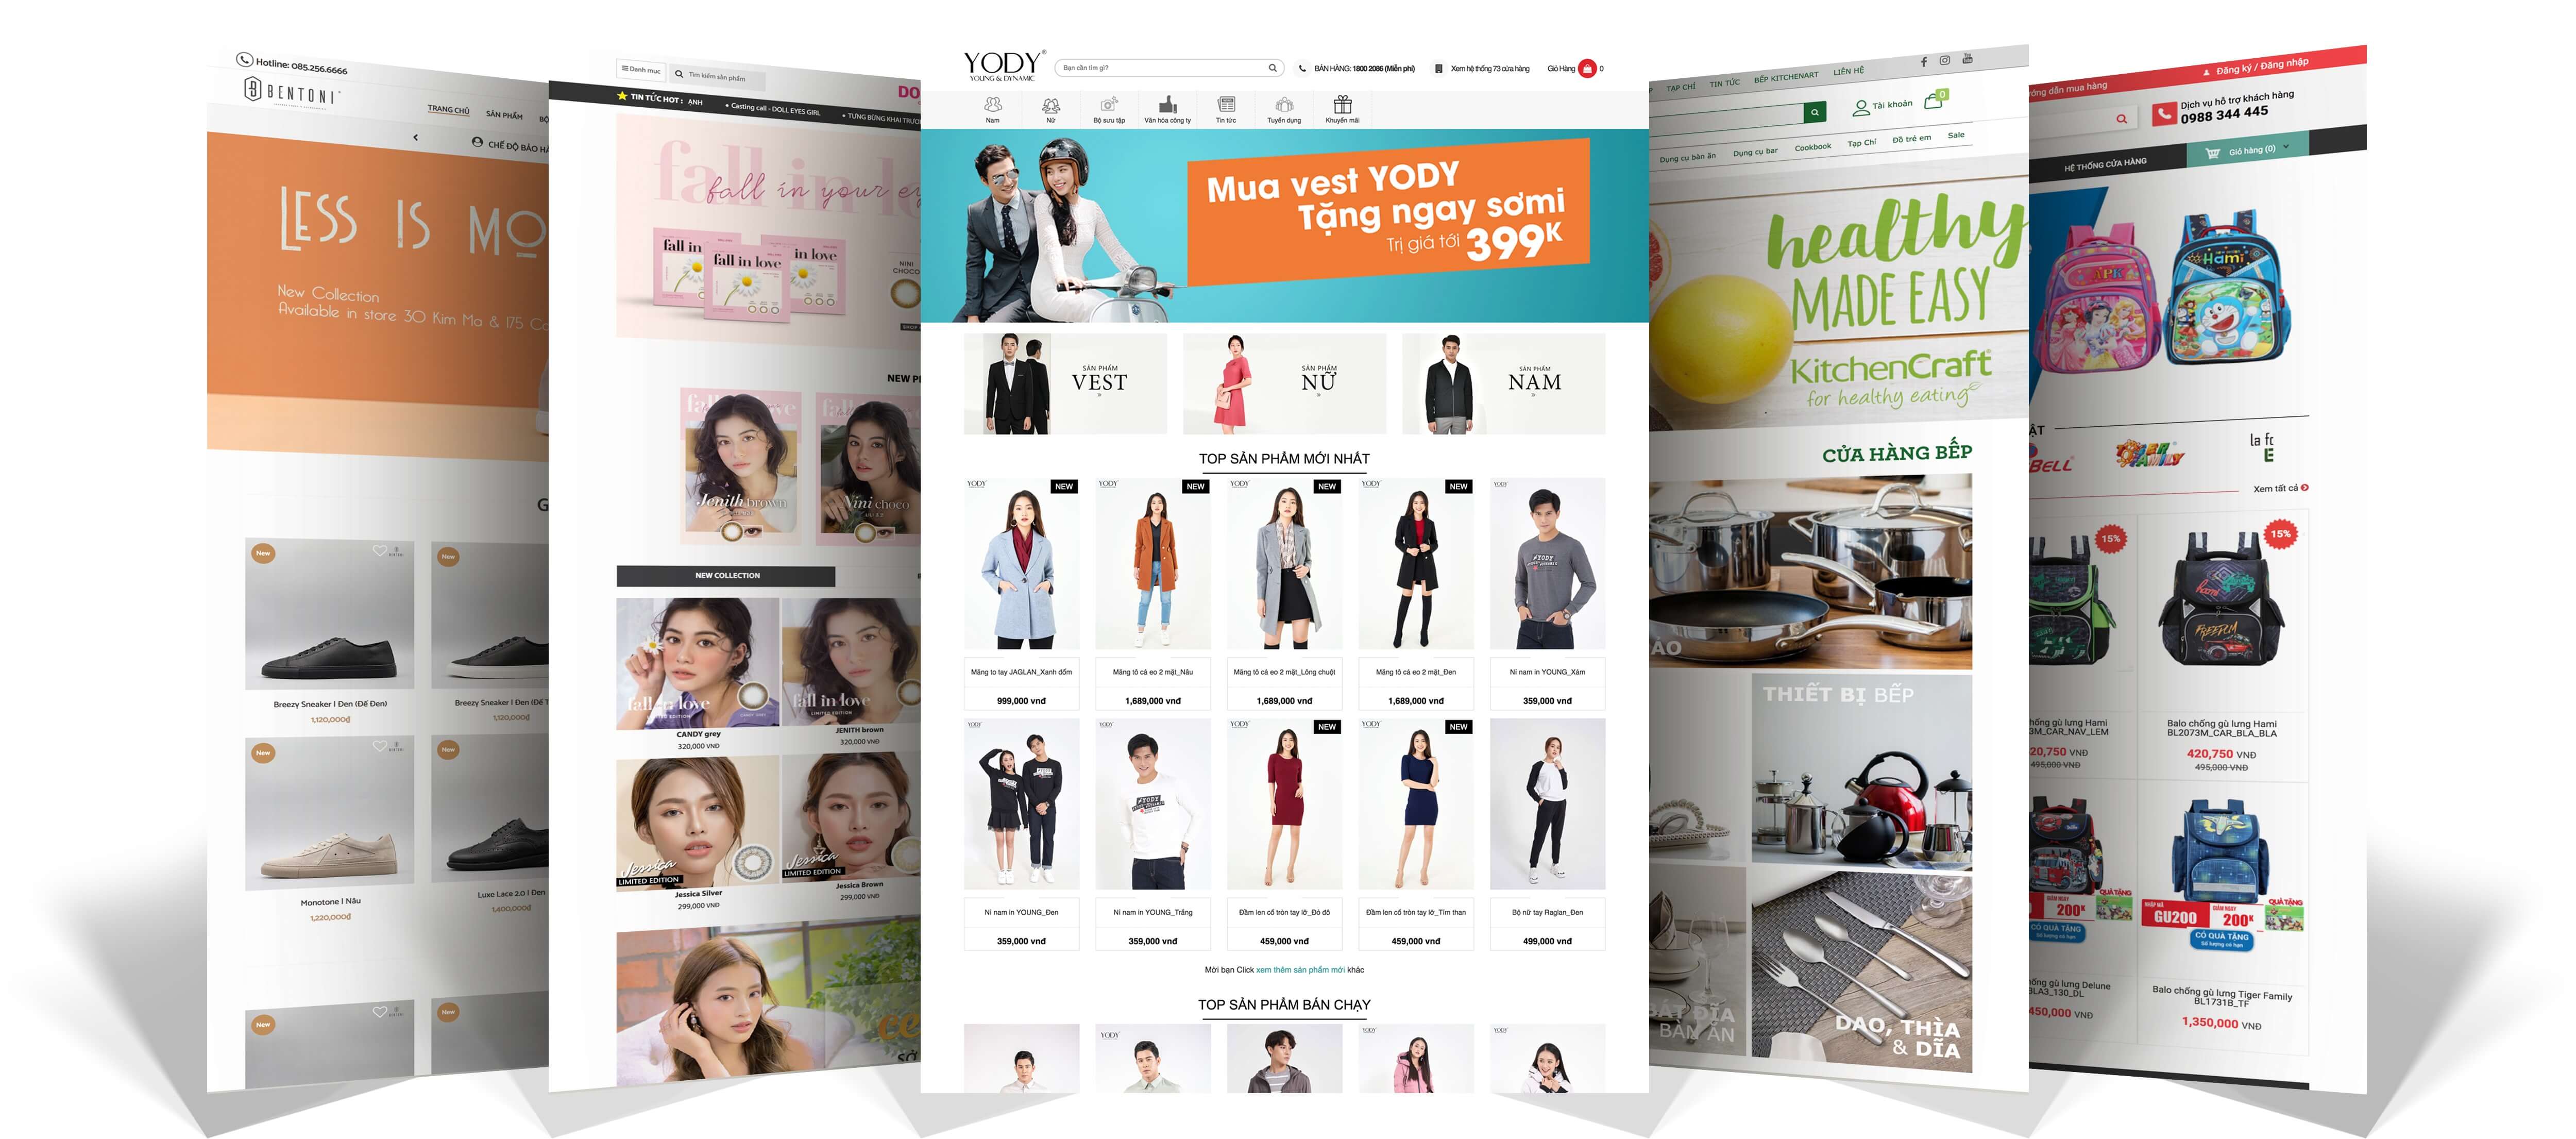 Giới thiệu các tính năng thiết kế website bởi Nhanh.vn - Nhanh.vn